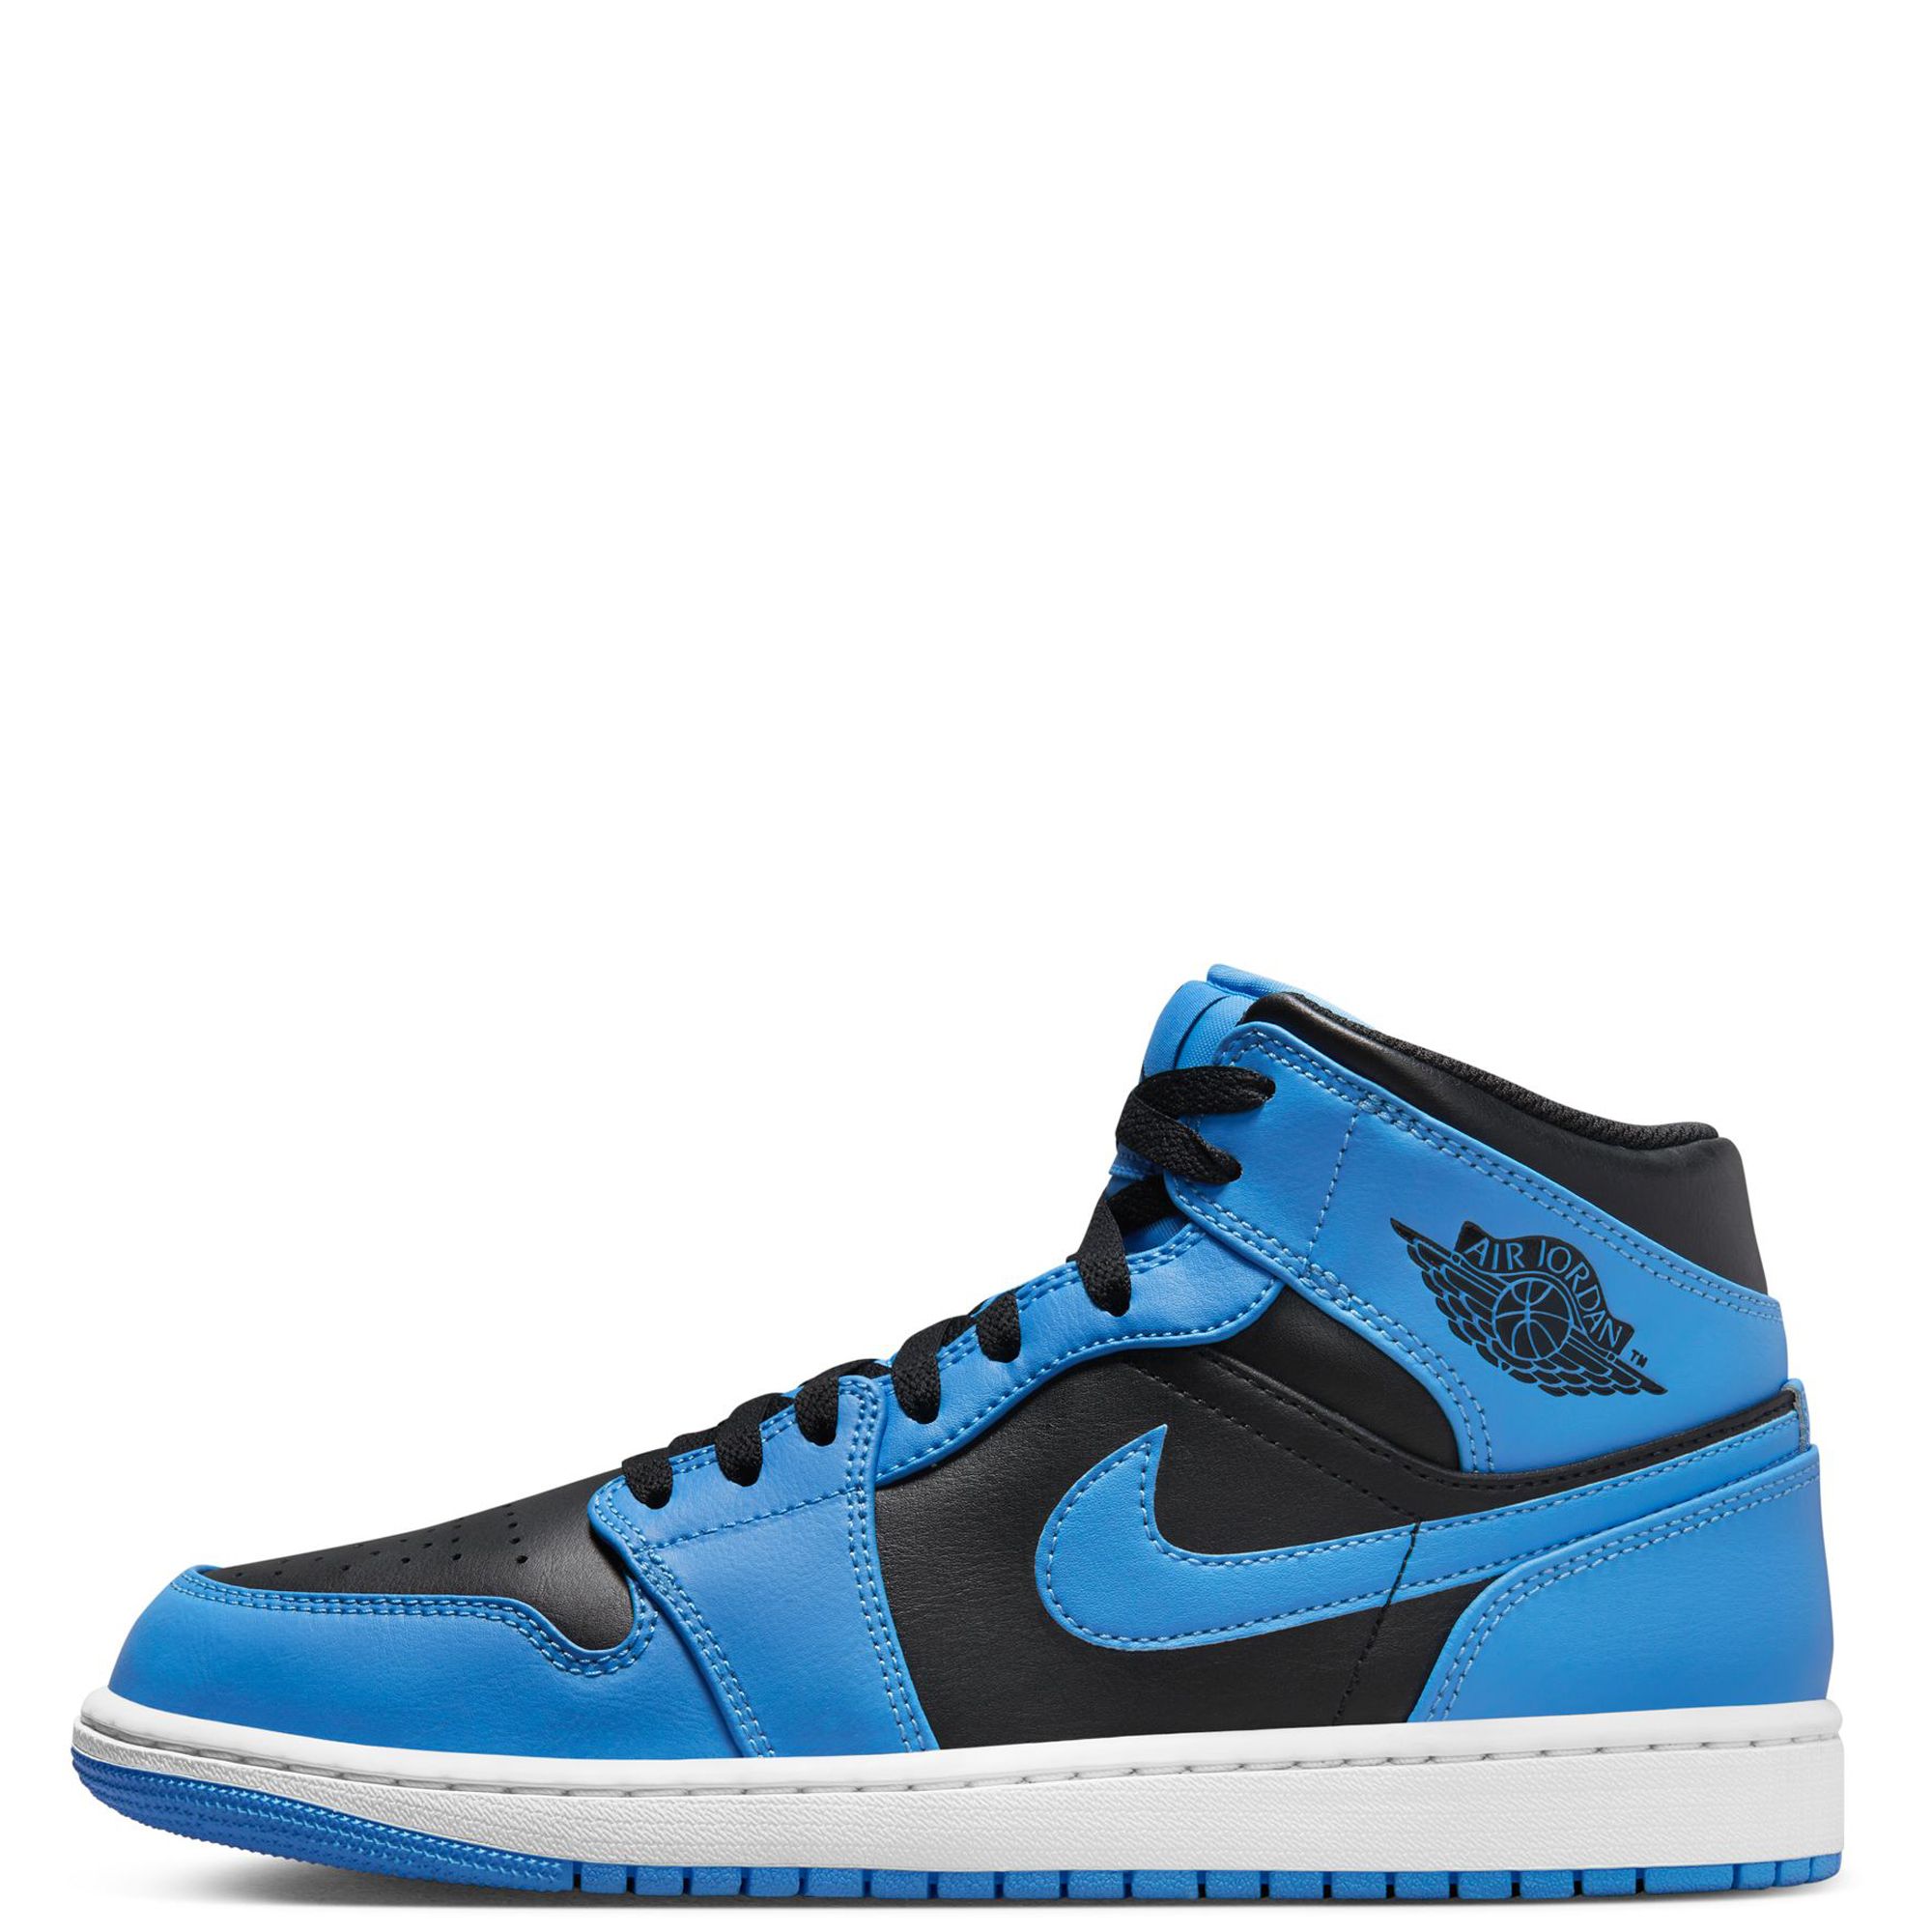 Nike Air Jordan 1 Mid Men's Shoes University Blue/Black White DQ8426 401 -  Size 12.5